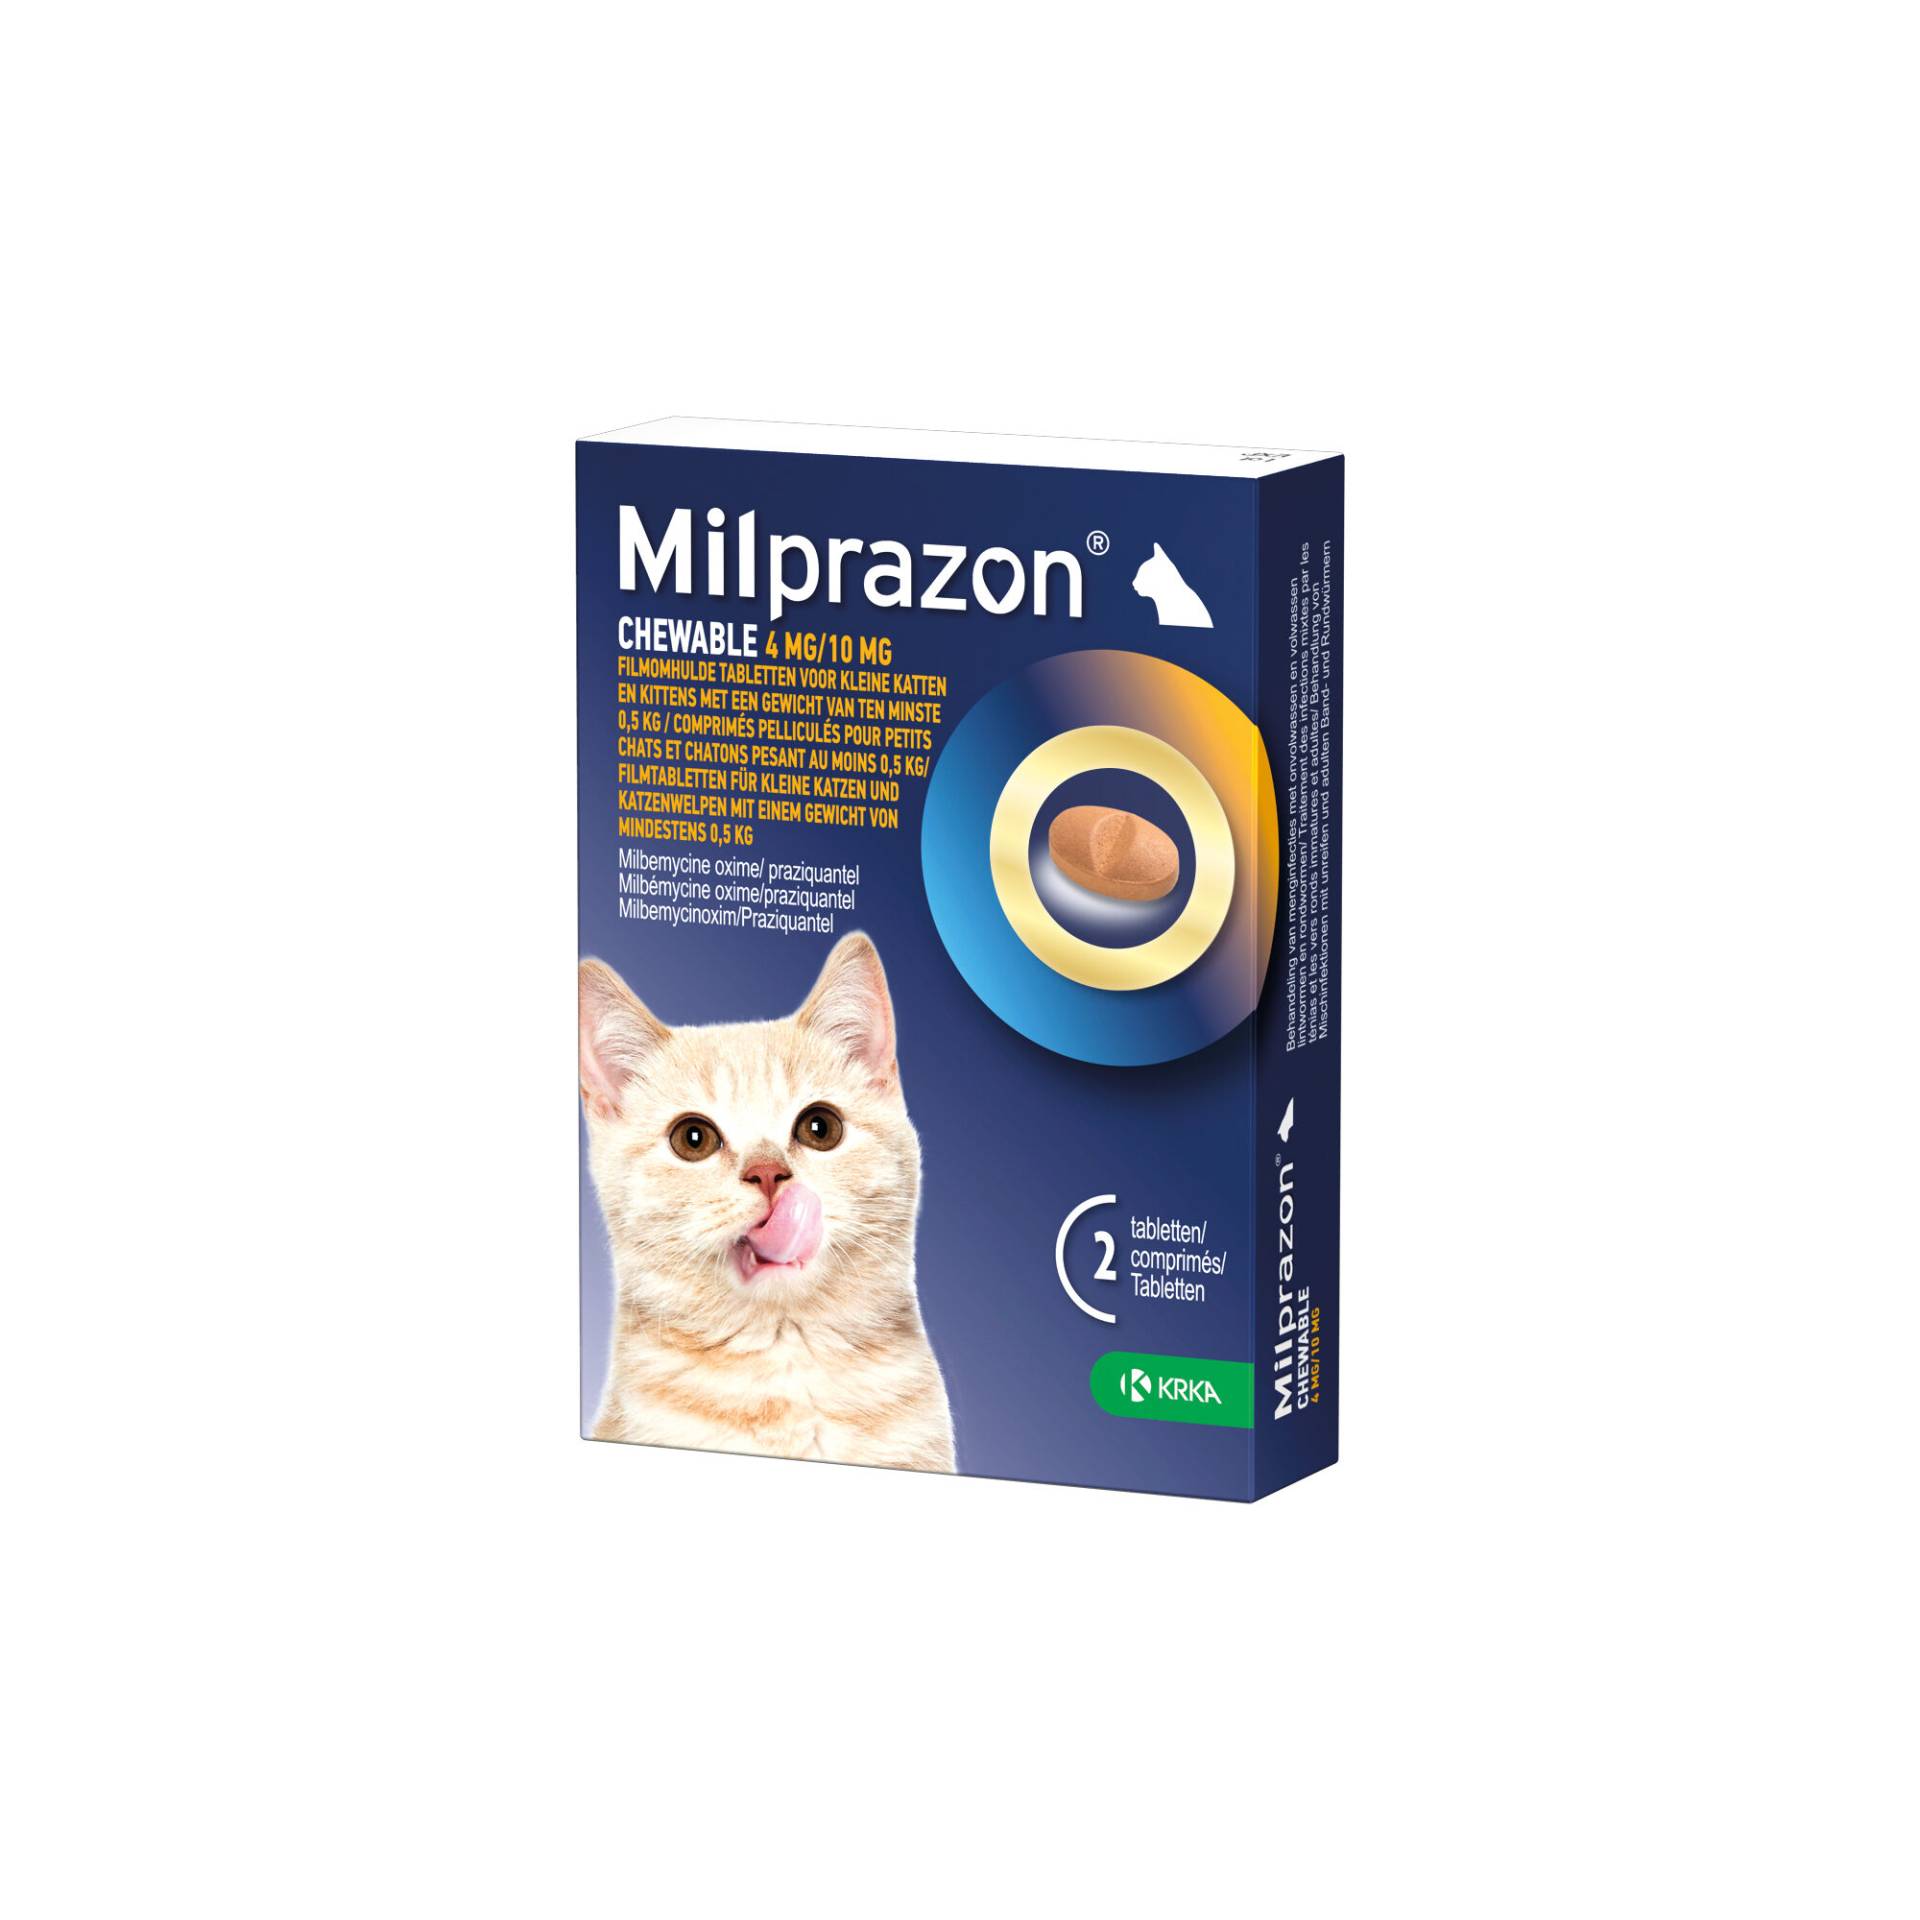 Milprazon Chewable 4 mg/10 mg - Kleine Katze - 2 Tabletten von Milprazon